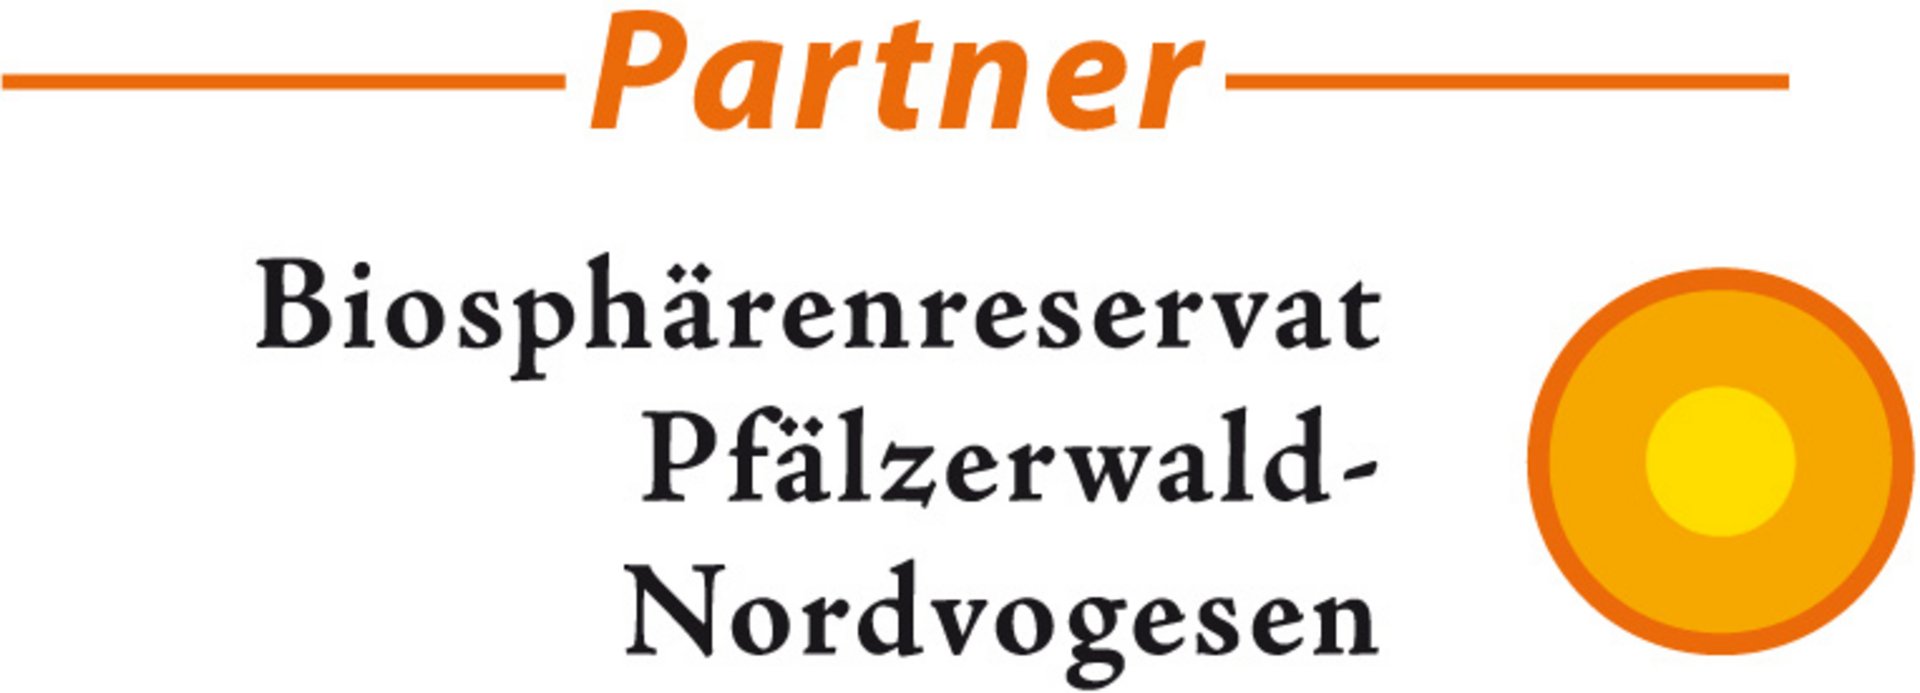 Unsere Partnerschaft - Biosphärenreservat Pfälzerwald-Nordvogesen